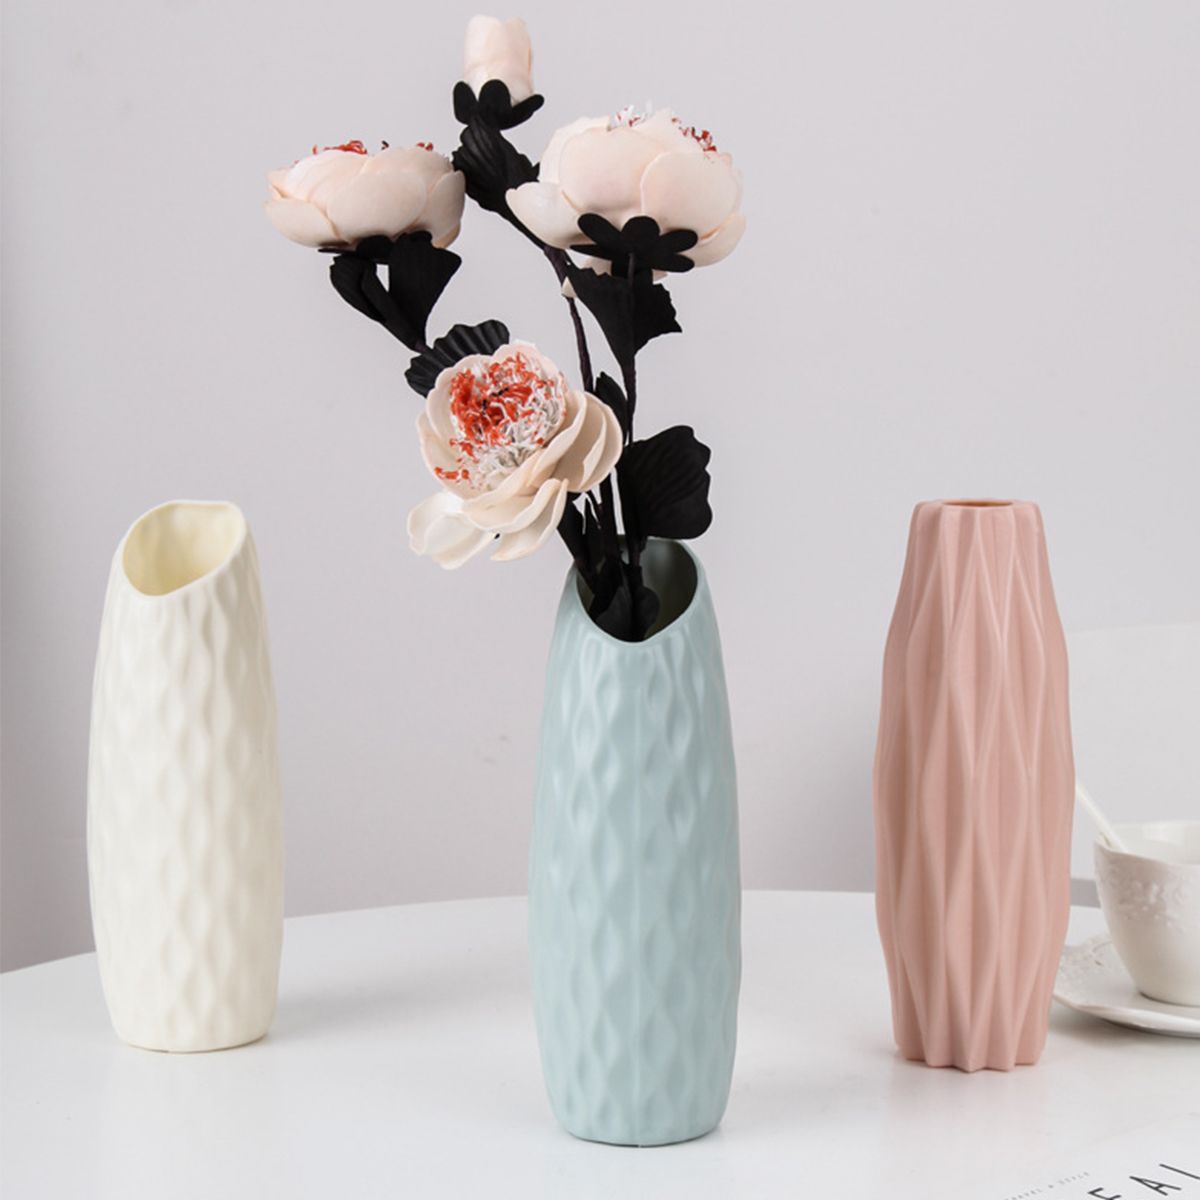 Nordic-Art-Creatives-PE-Vase-White-Imitation-Ceramic-Flower-Pot-Flower-Vase-1605154